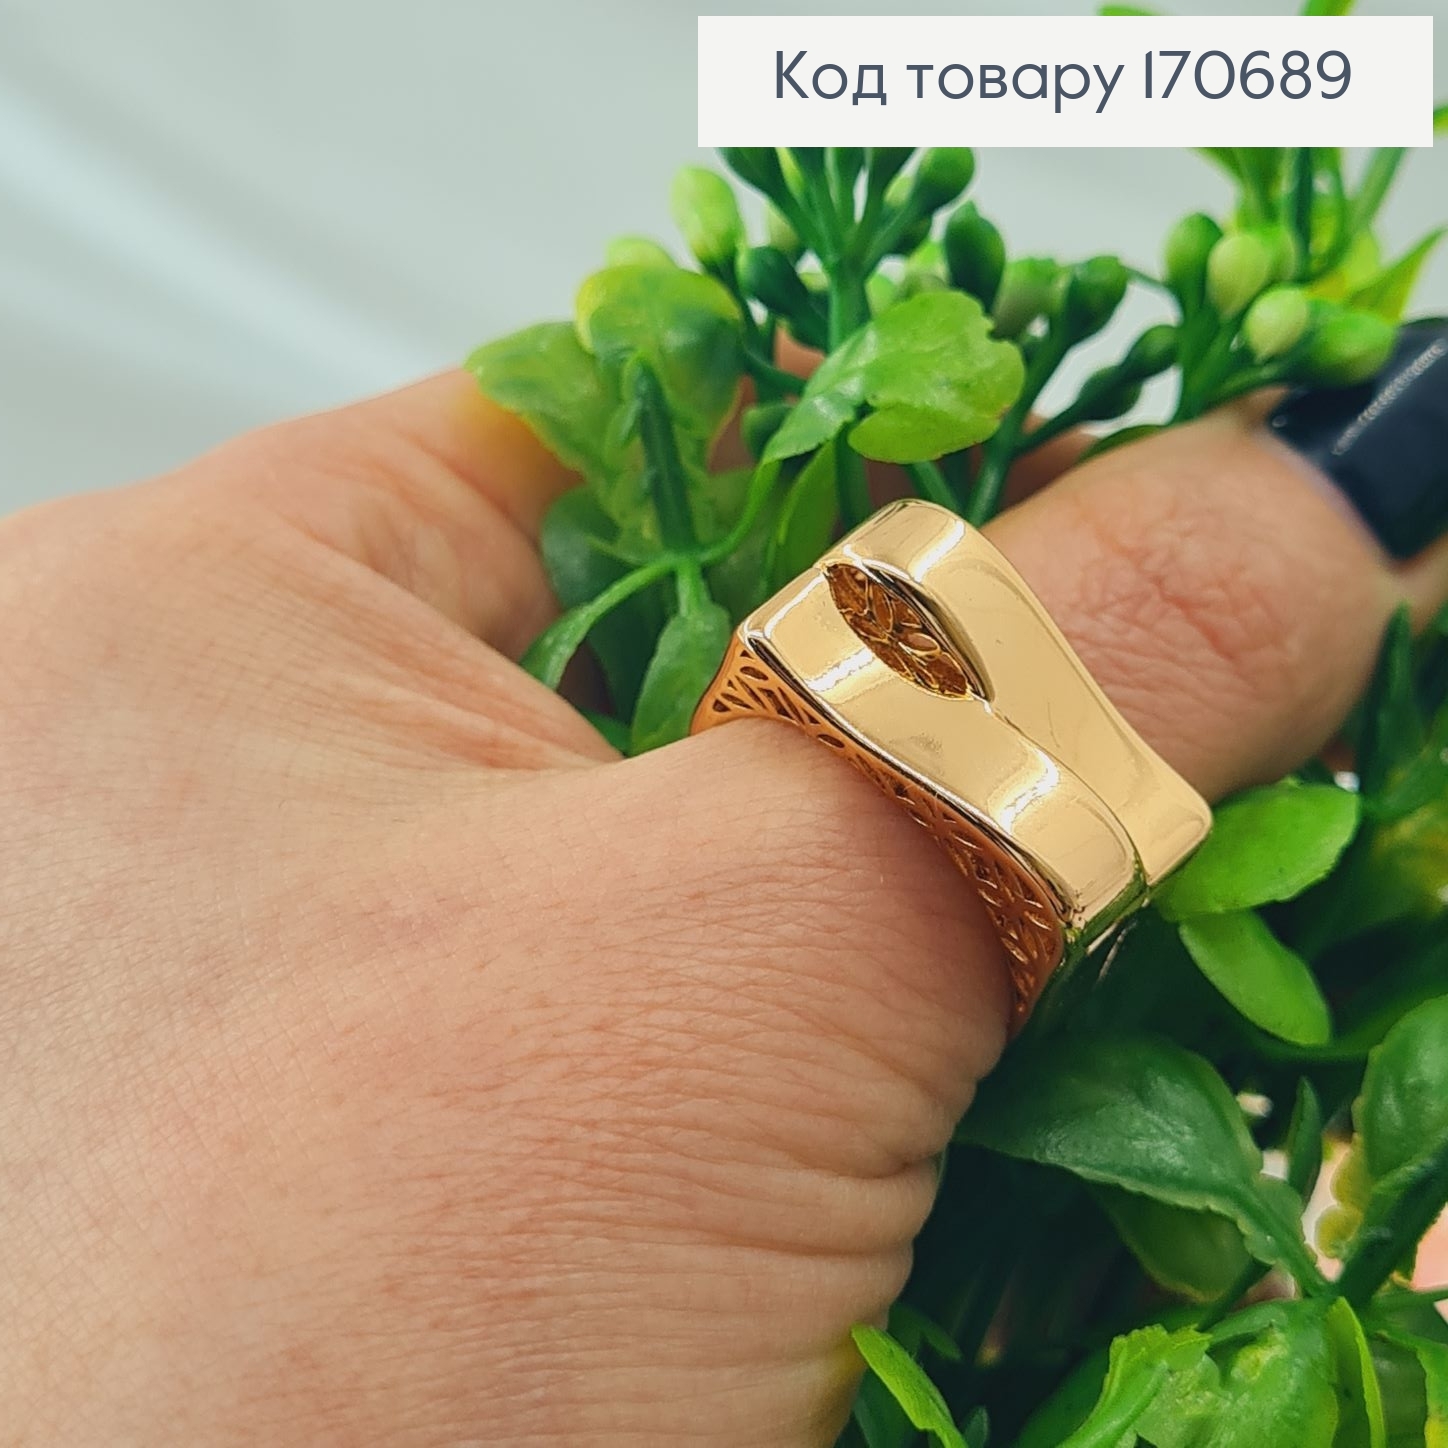 Кольцо "Современость", Xuping 18К 170689 фото 2